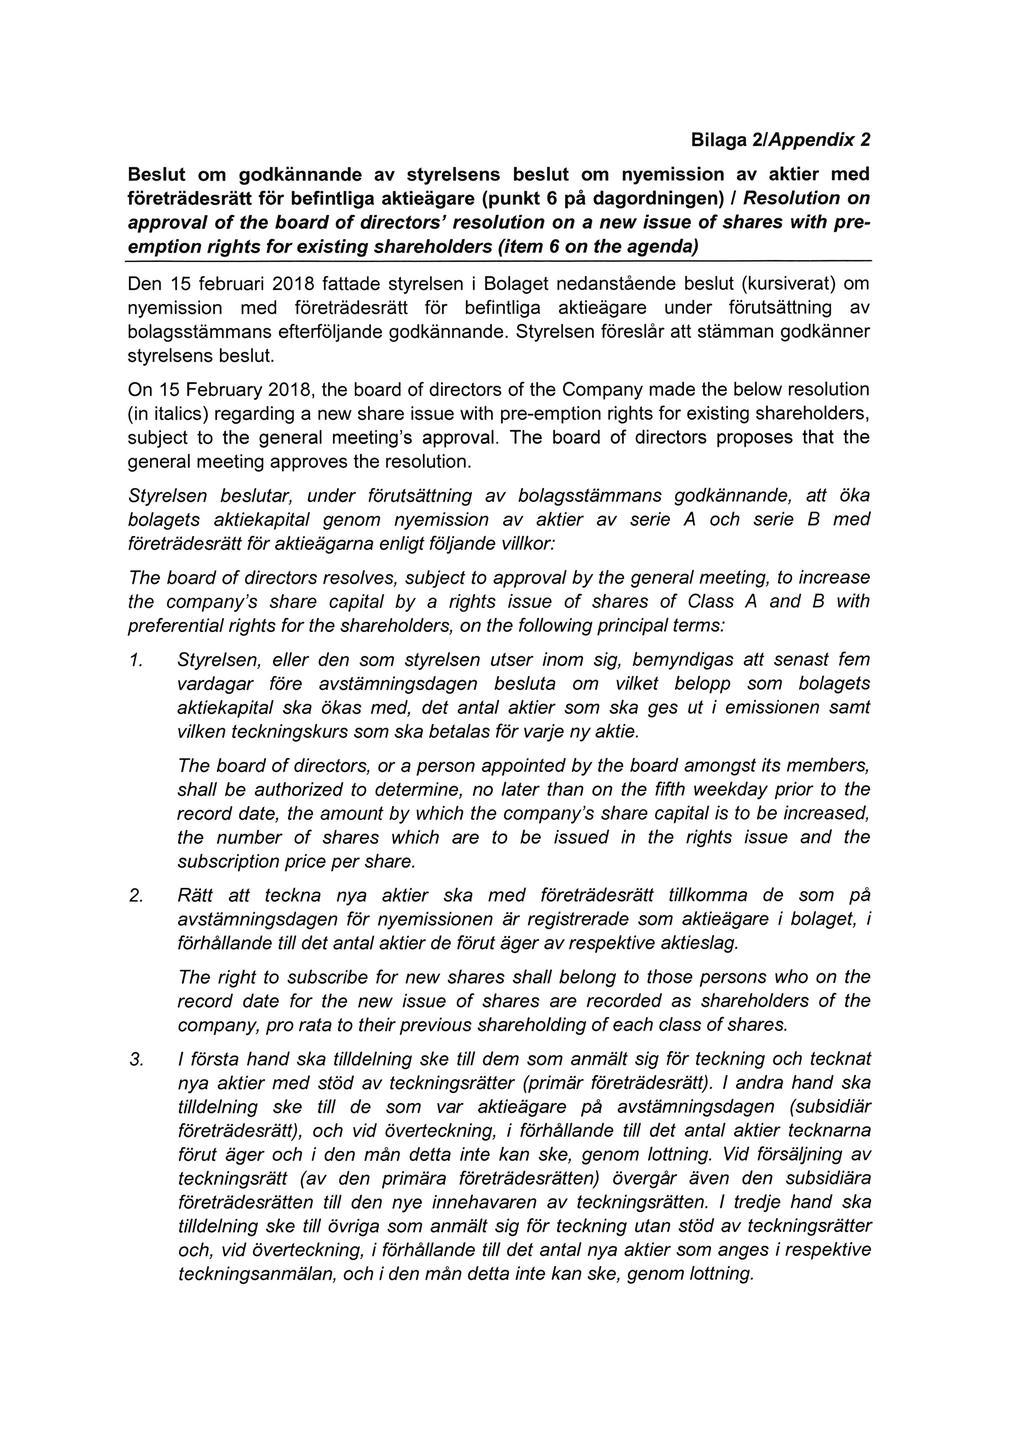 Bilaga 2/Appendix 2 Beslut om godkännande av styrelsens beslut om nyemission av aktier med företrädesrätt för befintliga aktieägare (punkt 6 på dagordningen) / Resolution on approval of the board of